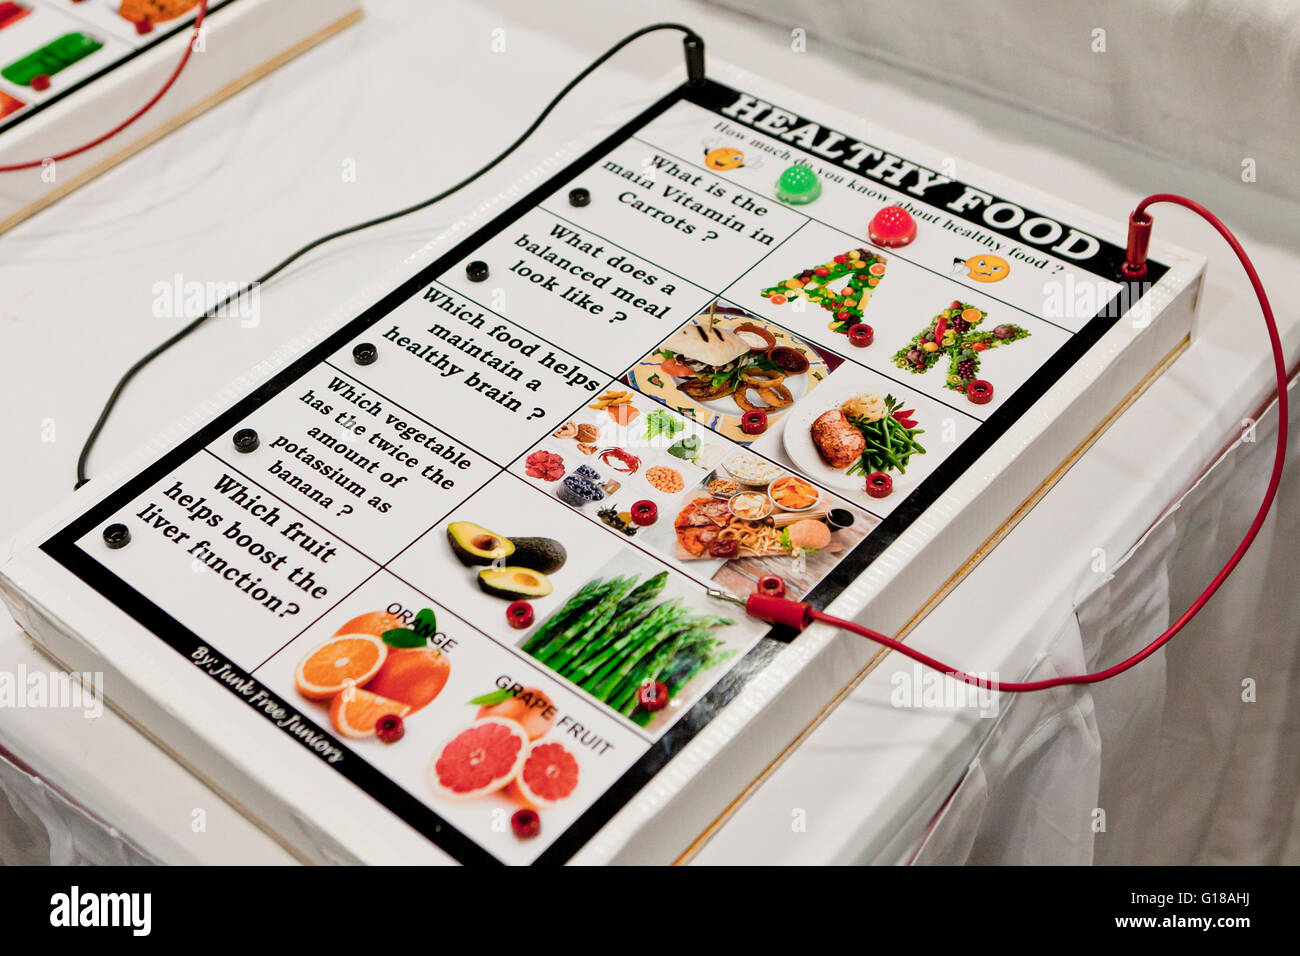 Gesunde Ernährung-Spielbrett von Studenten gemacht ausgestellt am Science fair - USA Stockfoto